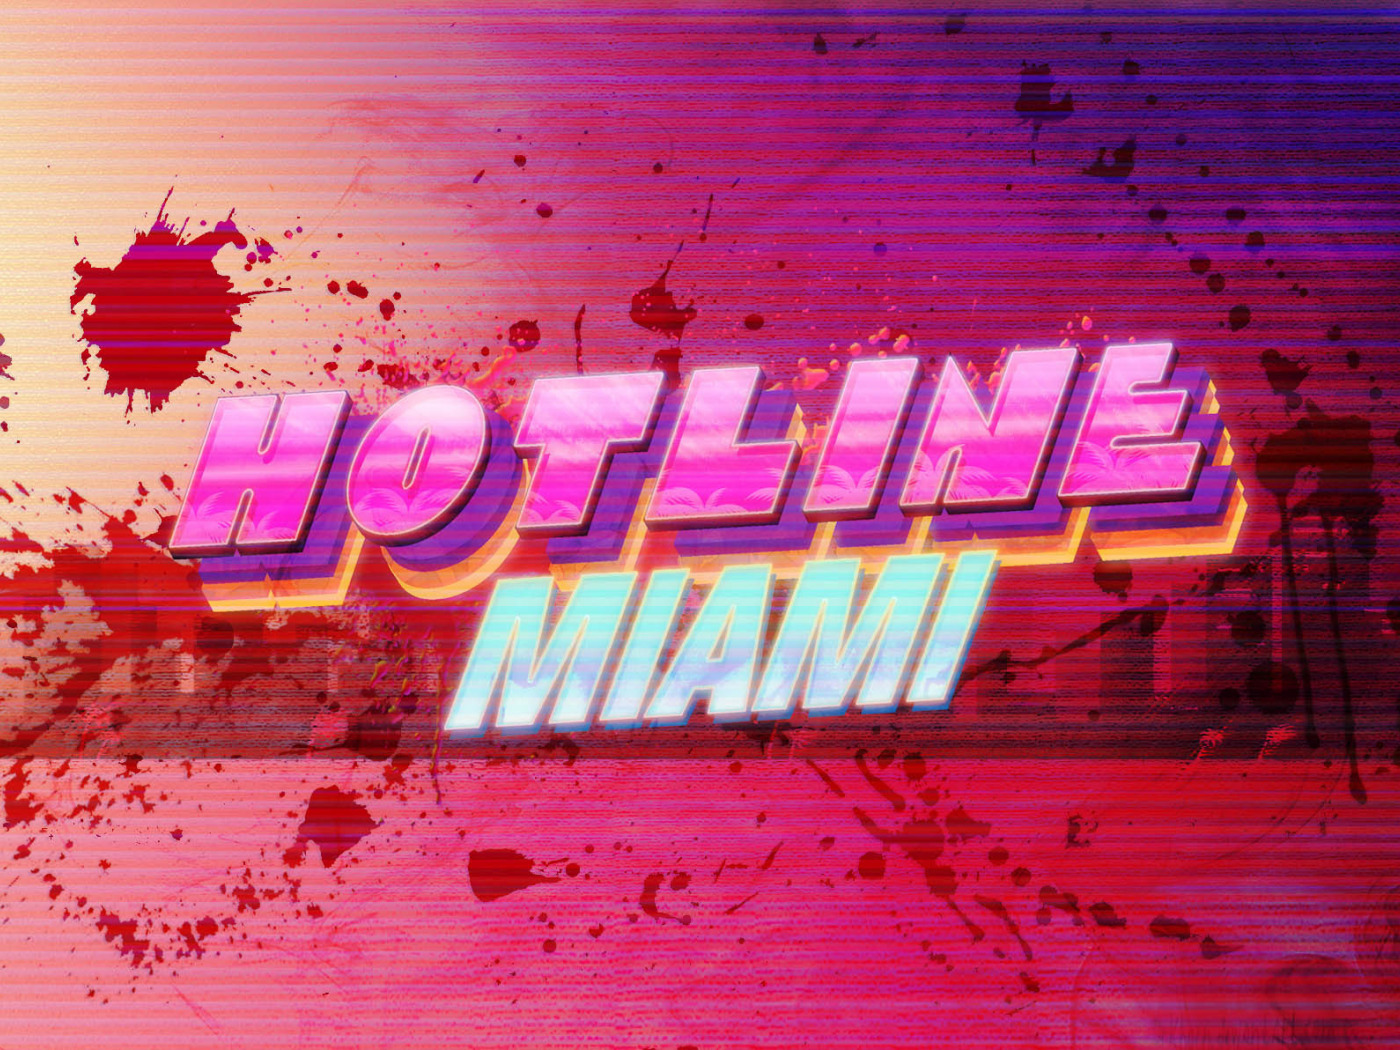 Hotline miami crystals. Hotline Miami логотип. Хотлайн Майами лого. Hotline Miami надпись. Хотлайн Майами 2 логотип.